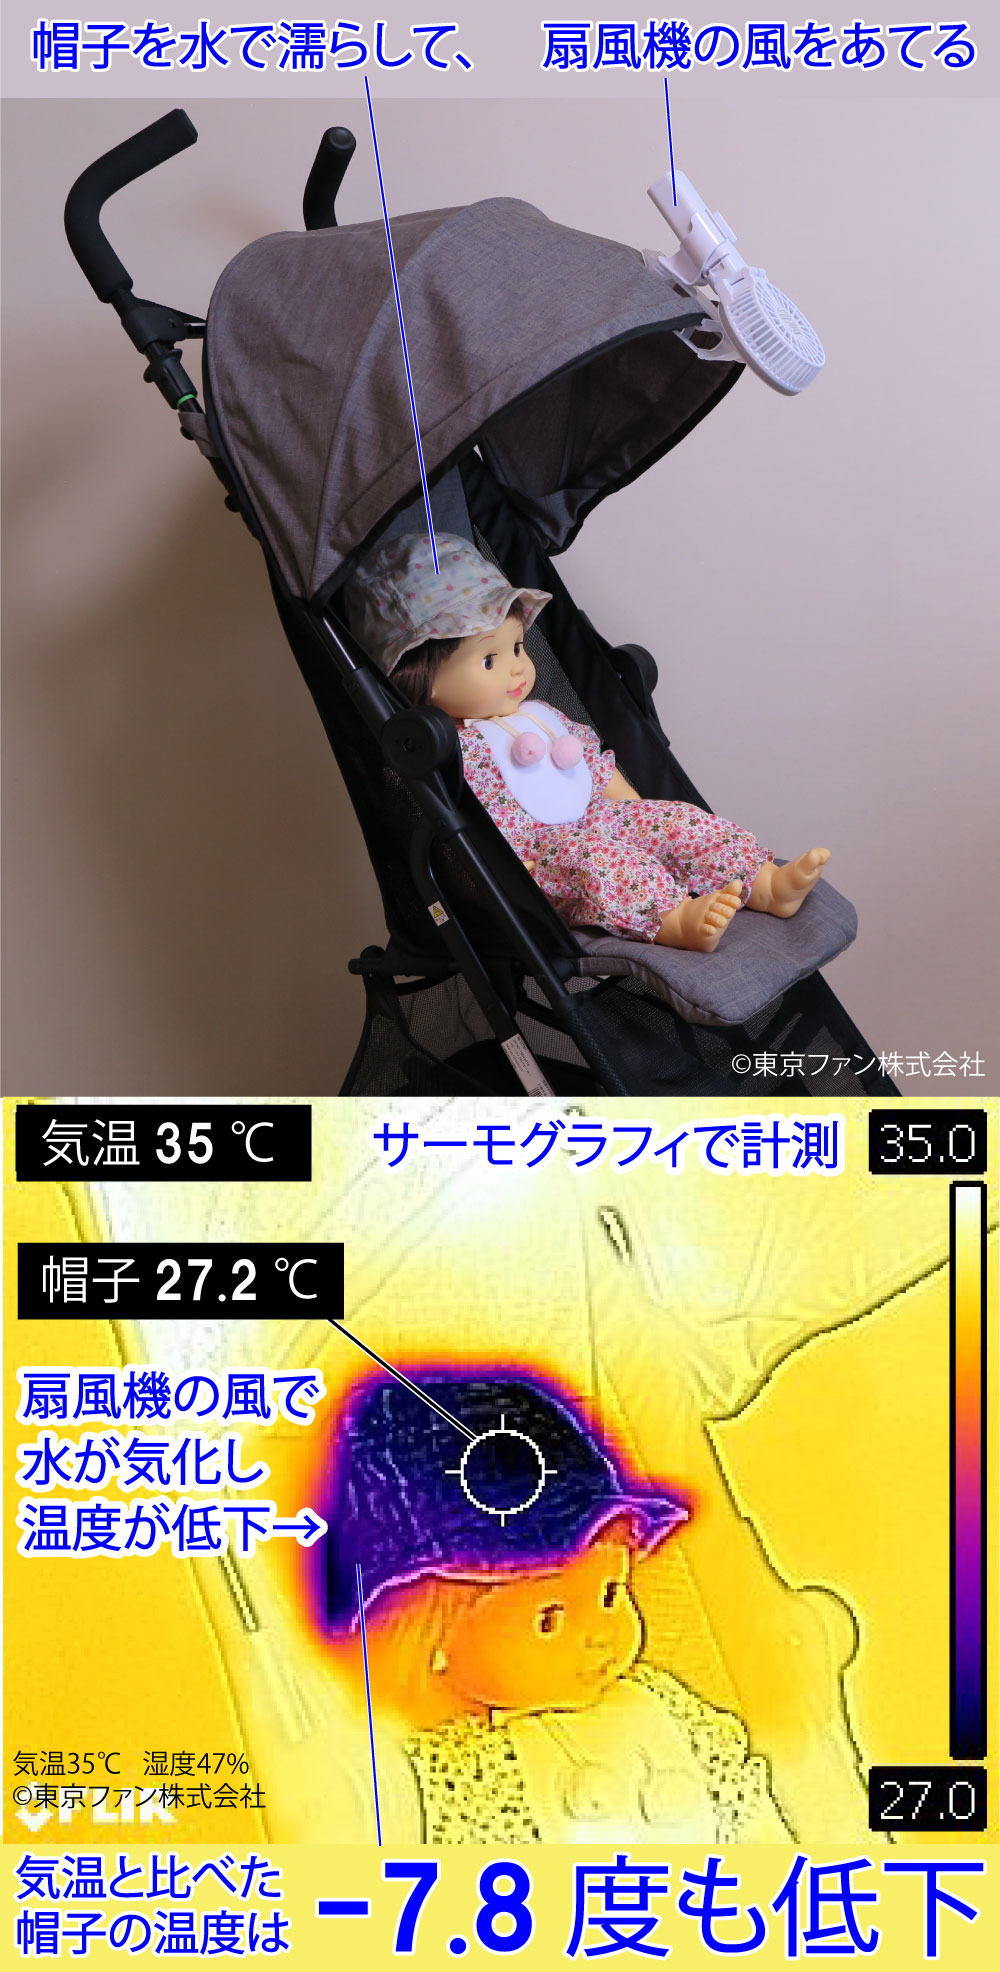 子供の熱中症対策で、ベビーカーに扇風機を取り付けるときは、子供の帽子を水で濡らすなどして、水の気化熱で体を冷やすようにしましょう。写真は、えりかけ扇風機 BodyFan 東京ファン株式会社